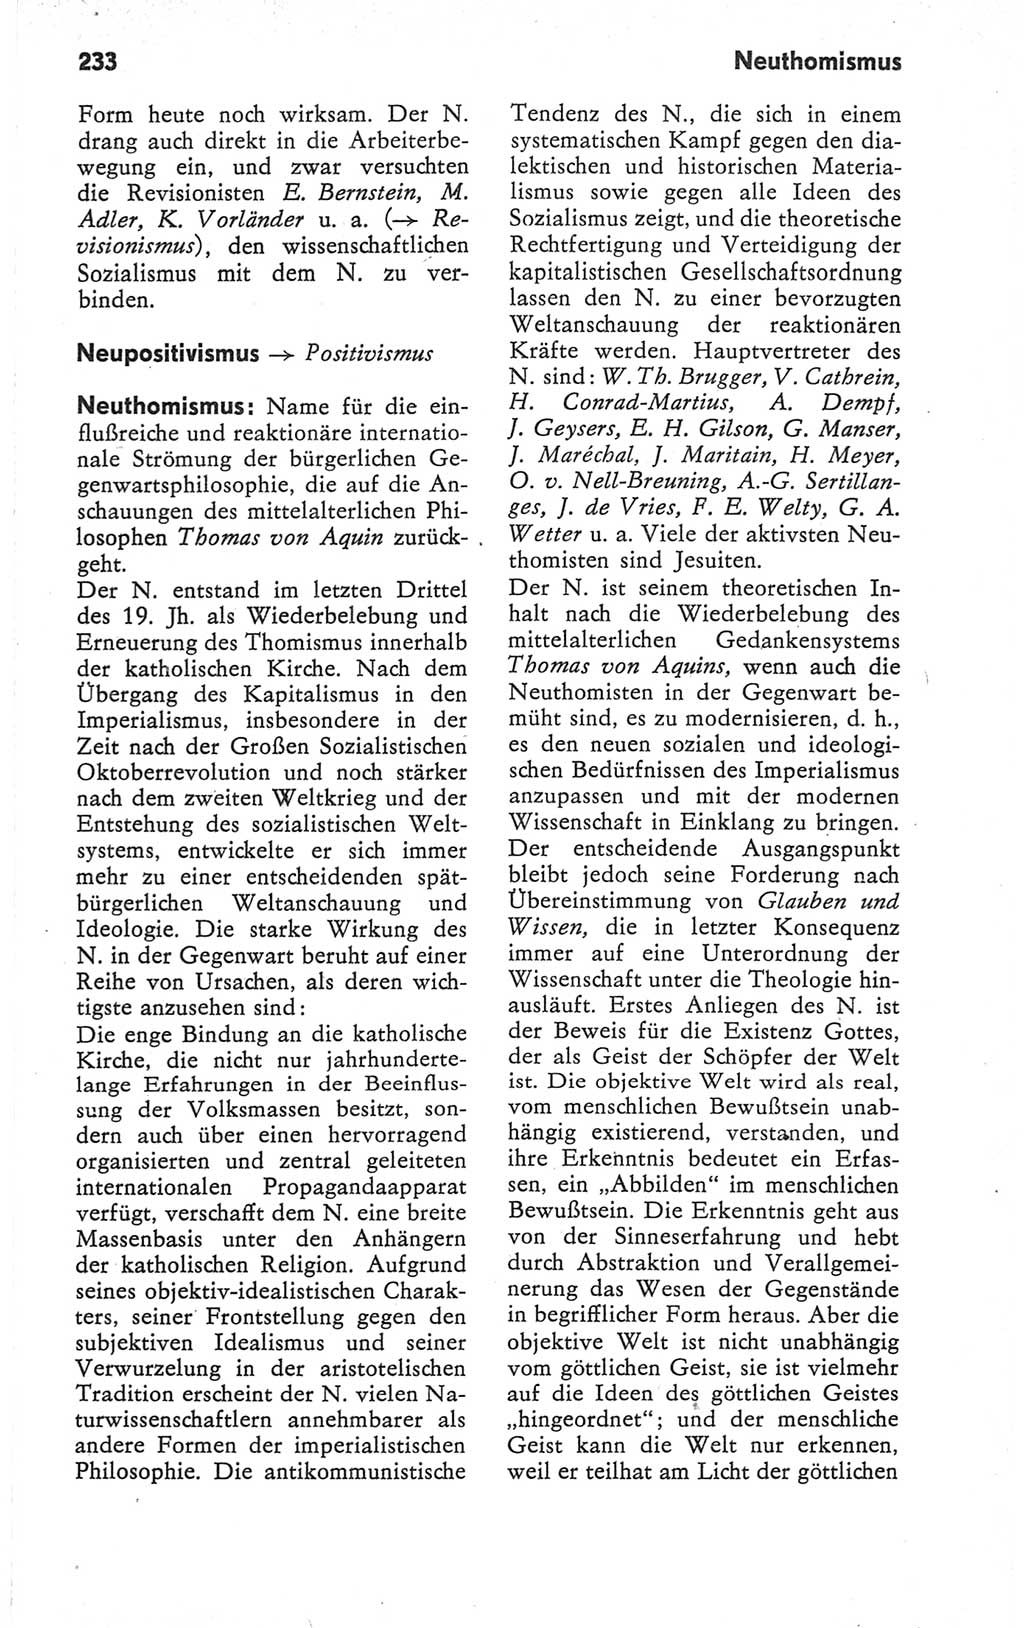 Kleines Wörterbuch der marxistisch-leninistischen Philosophie [Deutsche Demokratische Republik (DDR)] 1979, Seite 233 (Kl. Wb. ML Phil. DDR 1979, S. 233)